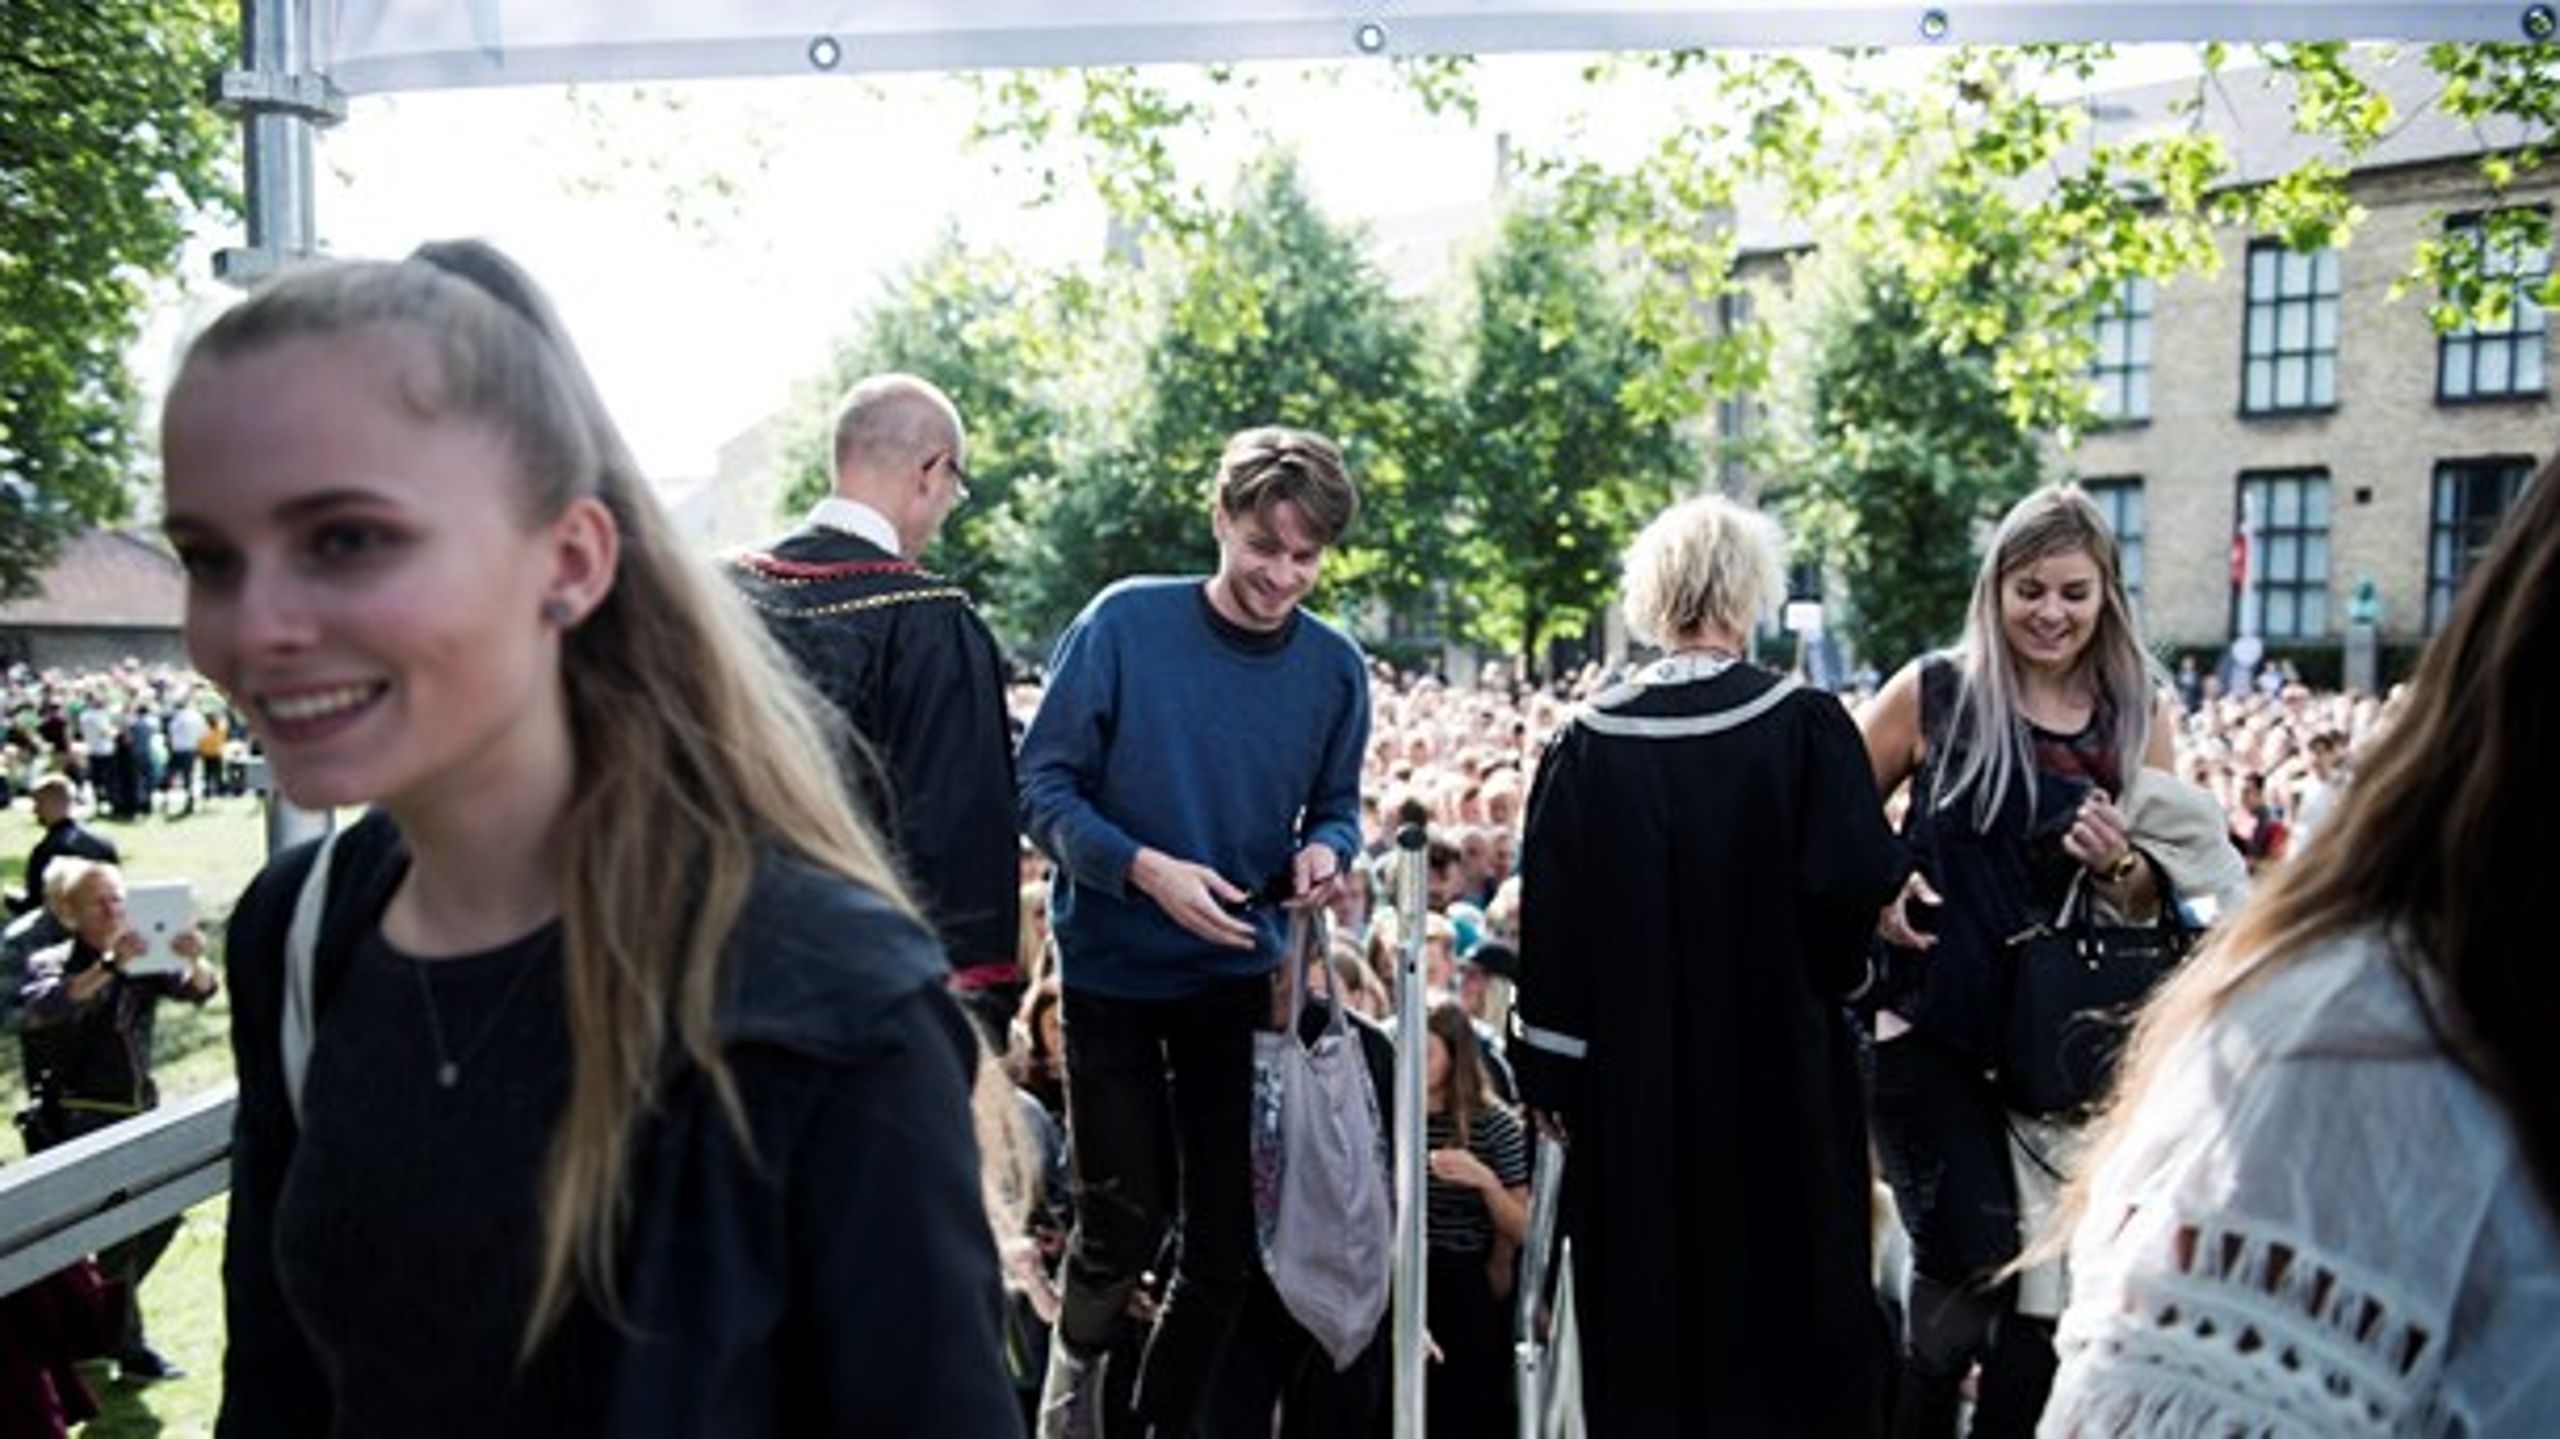 De nye studerende bliver budt velkommen til immatrikulationsfest på Københavns universitet. For mange af de unge er kvote 2 vejen til deres drømmeuddannelse, og derfor er der behov for at sikre, at optagelseskriterierne er evidensbaserede, skriver&nbsp;<span>Bjarke Tarpgaard Hartkopf.<div><br></div></span>